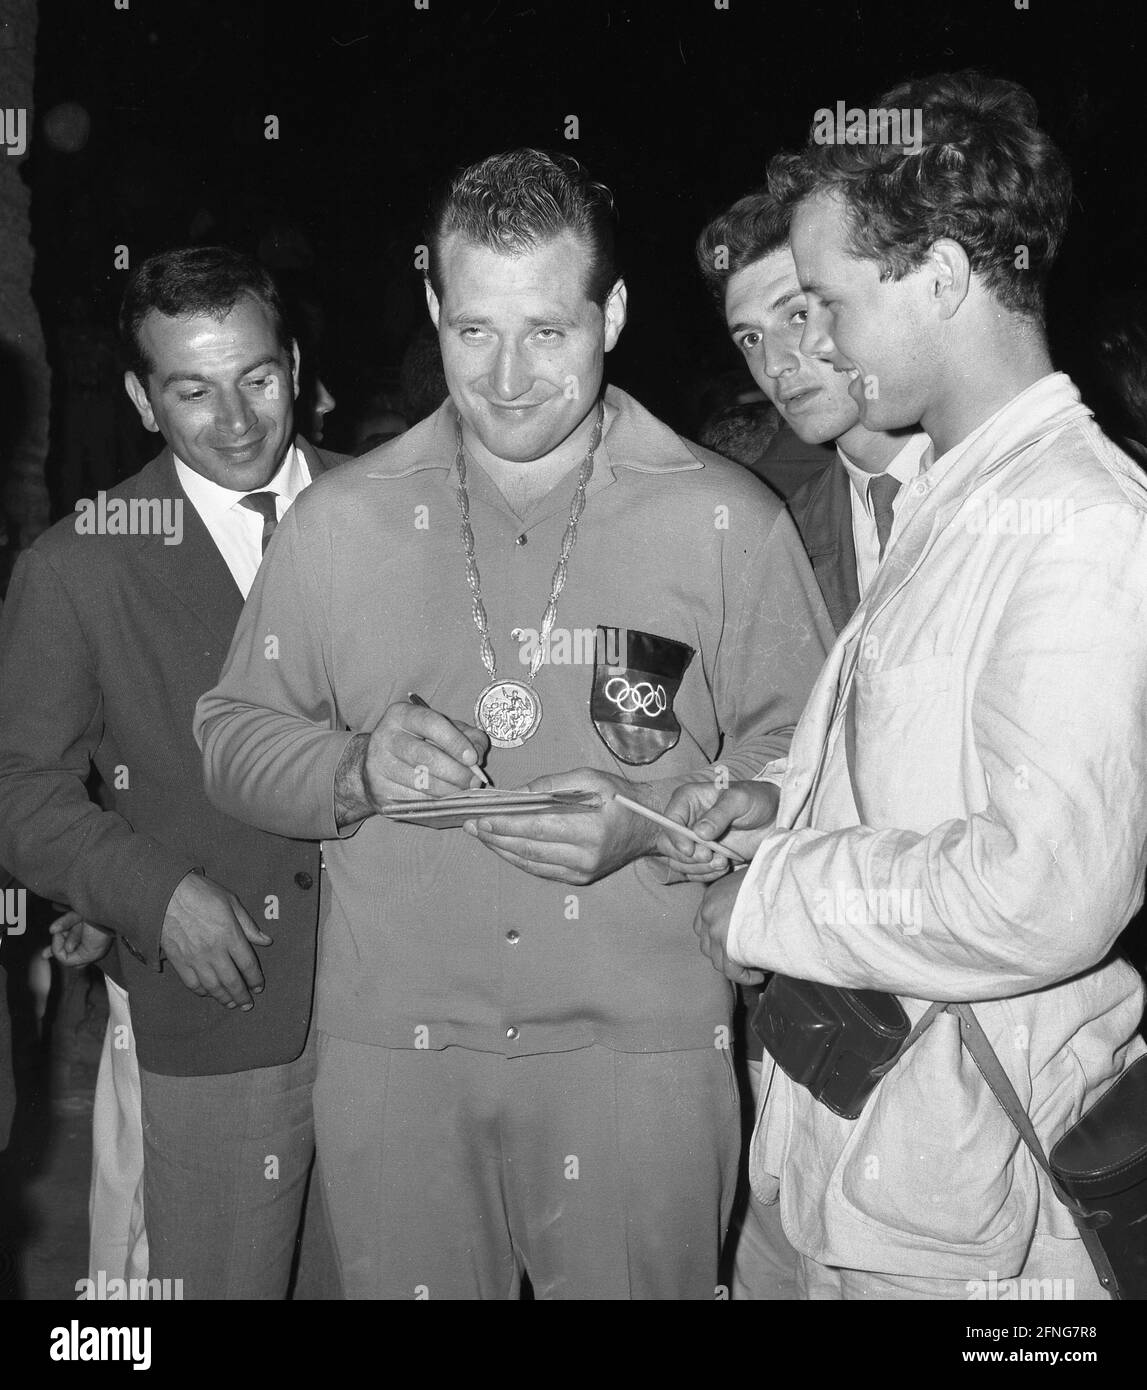 1960 Olimpiadas de verano en Roma. Wrestling: Wilfried Dietrich (Alemania) con medalla de oro, firma autógrafos 09/06/1960. [traducción automática] Foto de stock